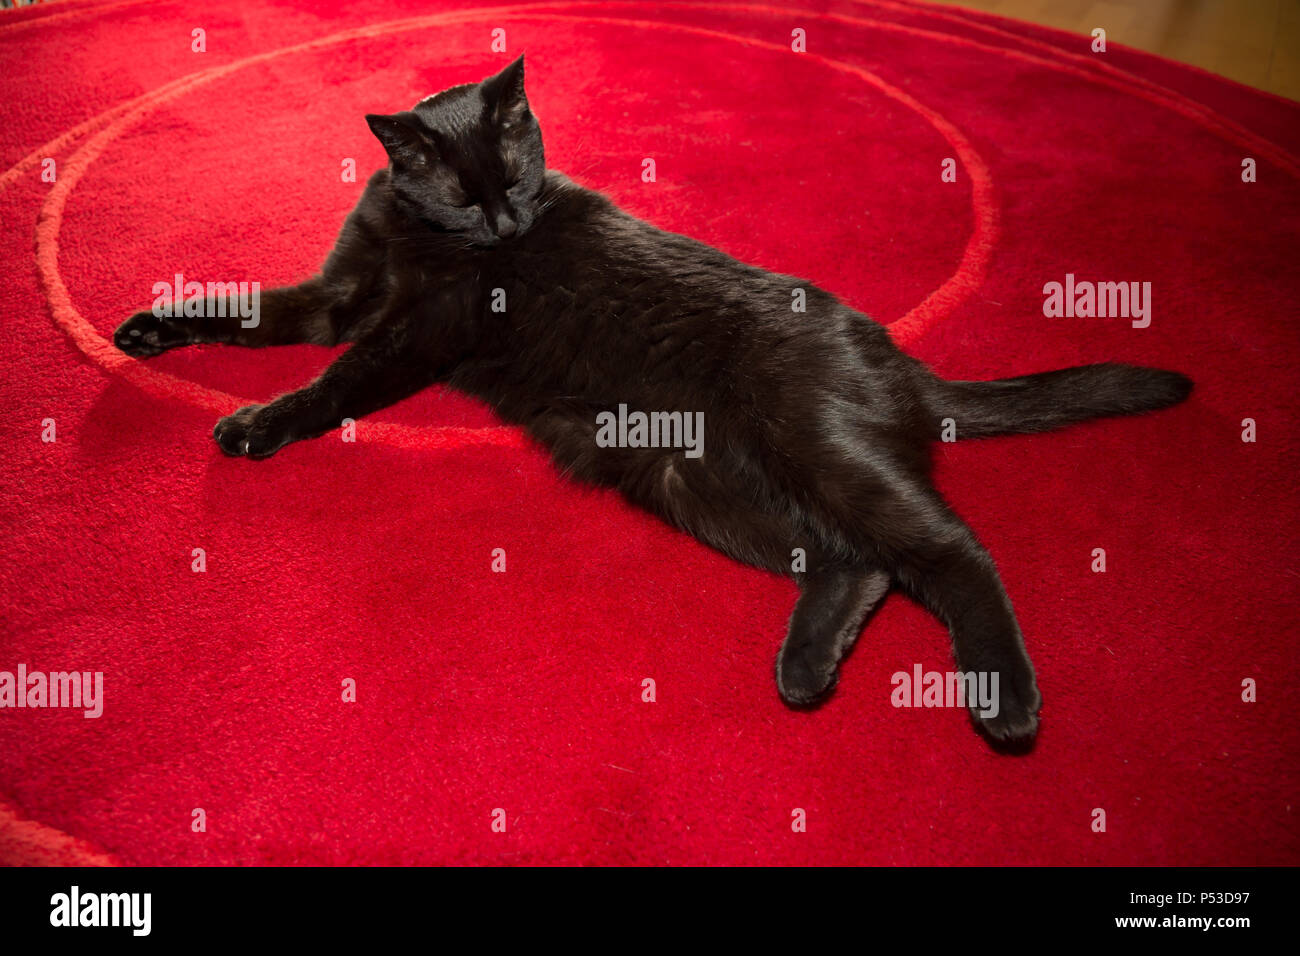 Gato negro, se tambalea en la alfombra roja Foto de stock